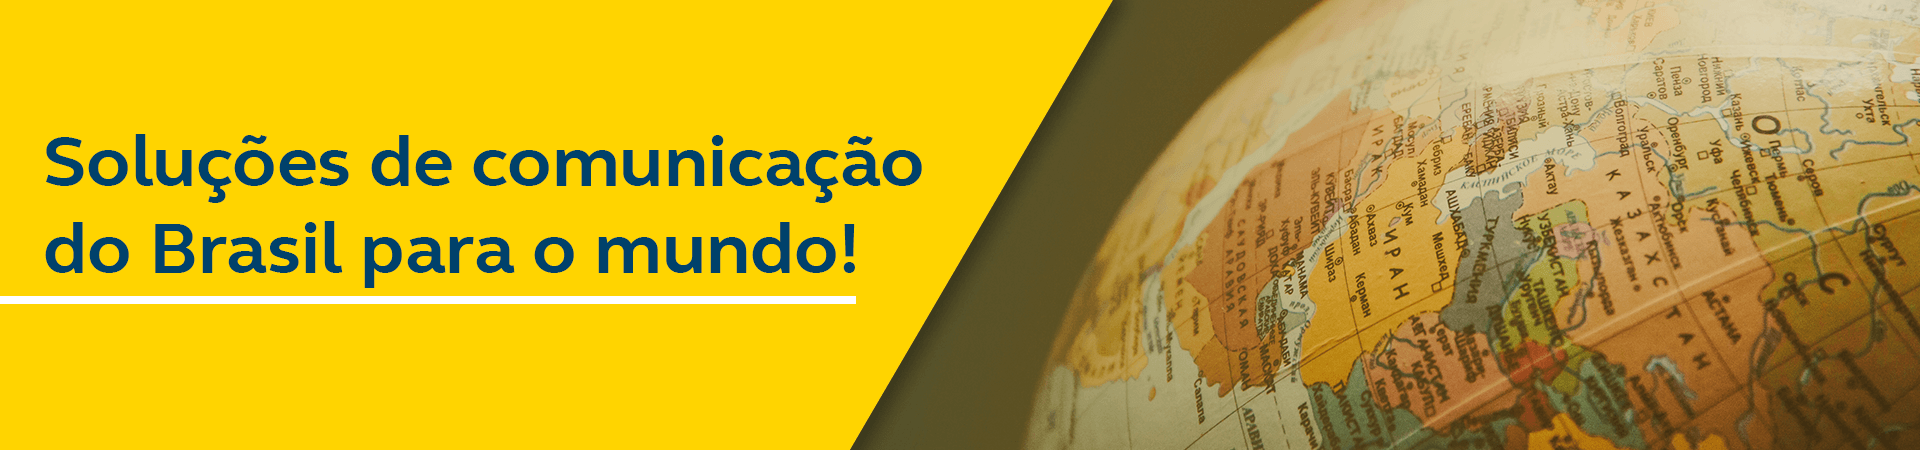 Foto de um globo terrestre mostrando alguns países. Frase do banner - Soluções de comunicação do Brasil para o mundo 